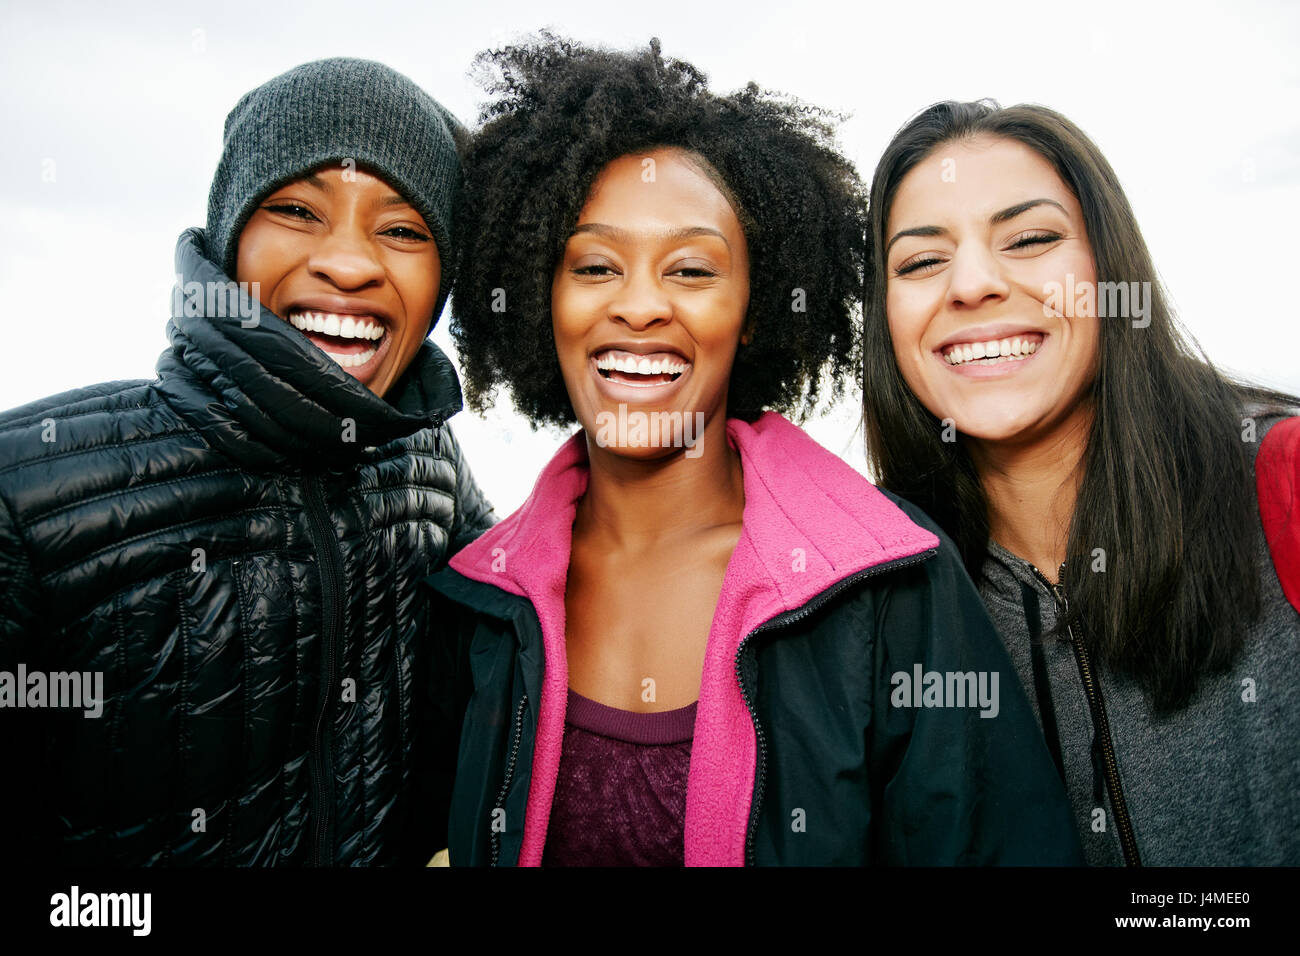 Portrait of smiling Black women Banque D'Images